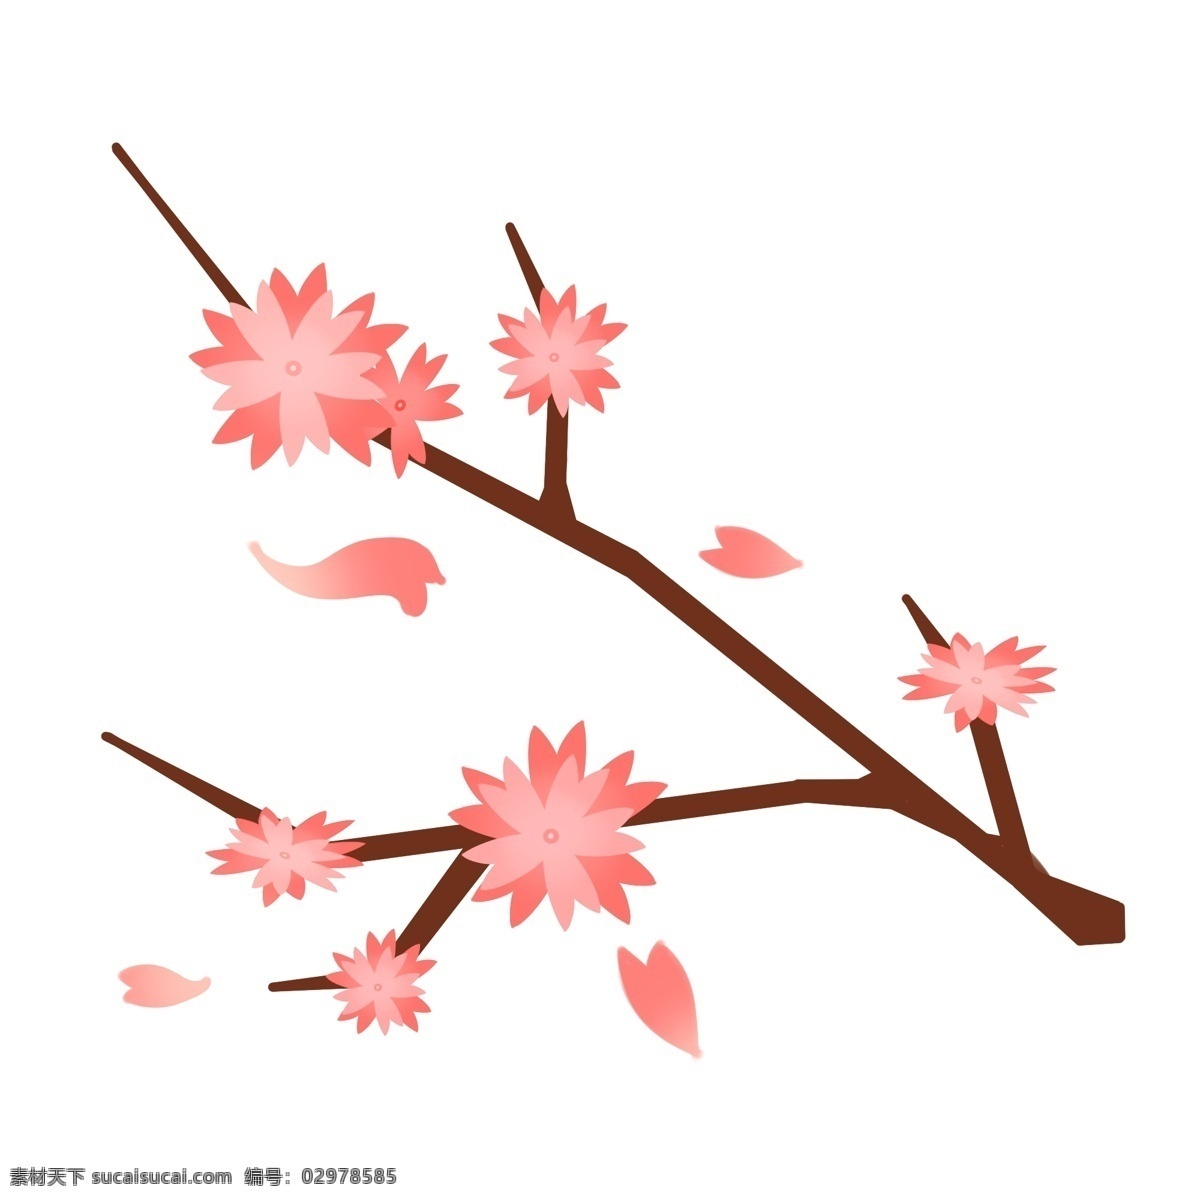 粉色 樱花 装饰 插画 粉色的樱花 漂亮的樱花 创意樱花 植物装饰 卡通樱花 樱花插画 立体樱花